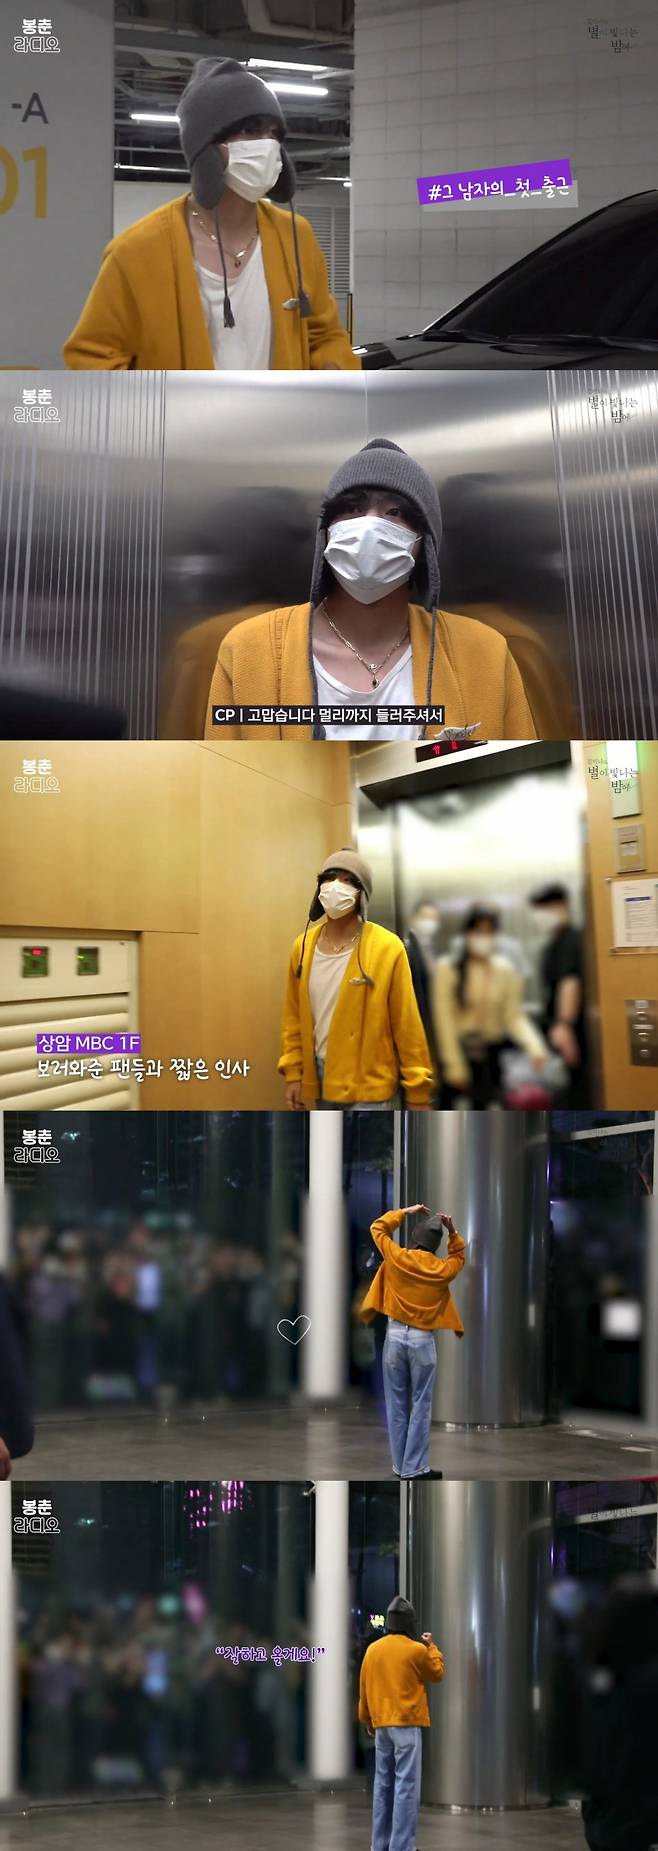 방탄소년단 뷔, 제작진도 감탄한 준비된 별밤지기..비하인드 영상 공개